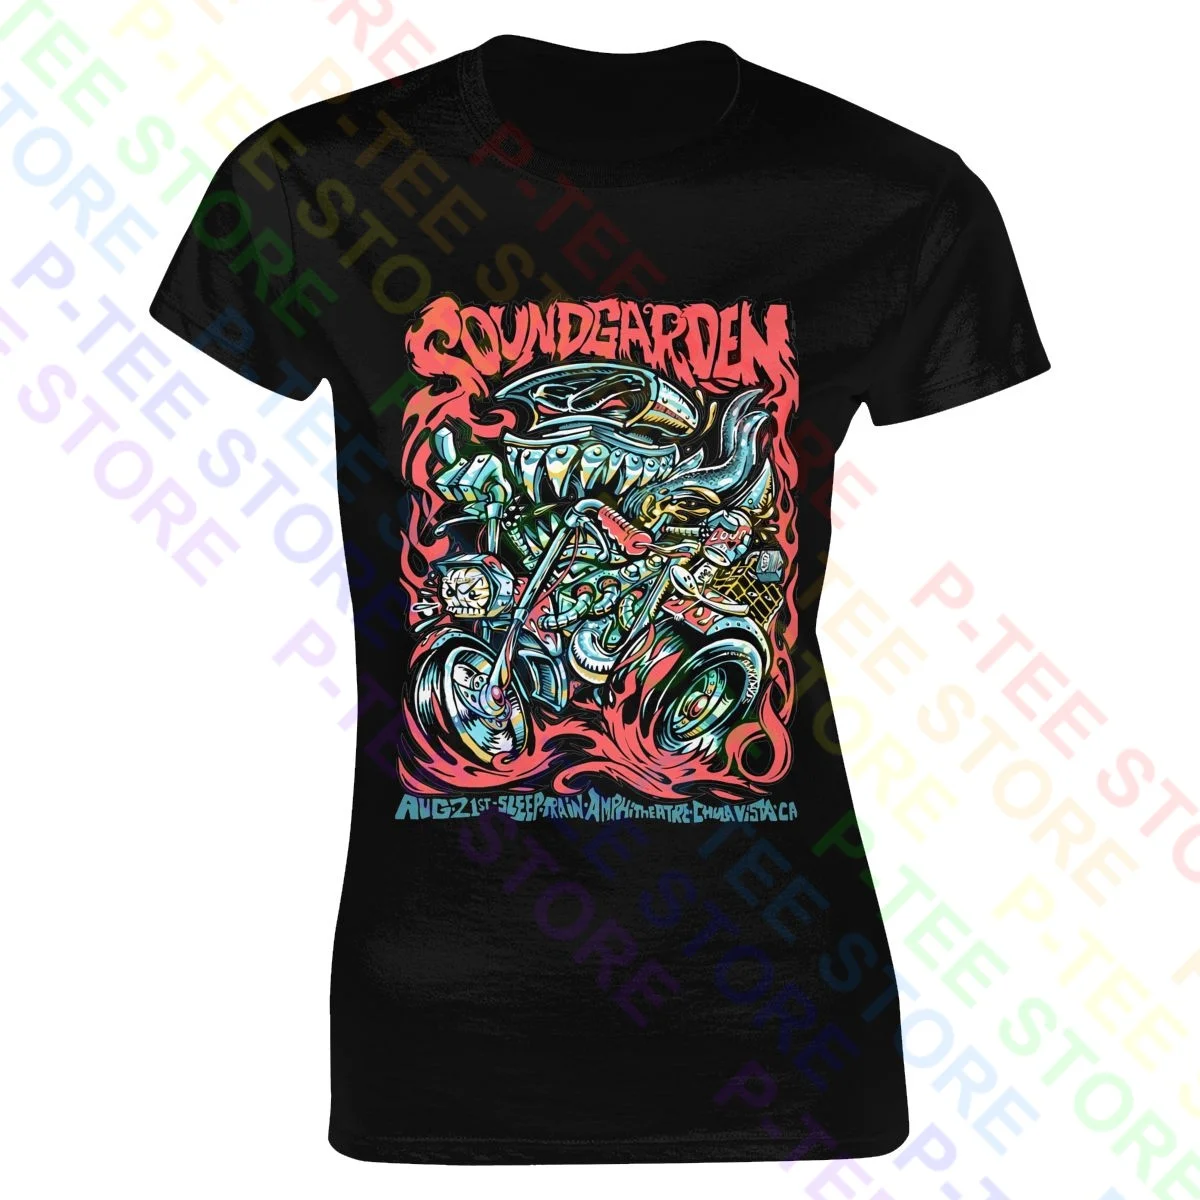 Soundgarden 21 августа, Мероприятие в Чула Виста, женская футболка, Женская рубашка Vtg, Повседневная Женская футболка в стиле Хип-Хоп Лучшего качества